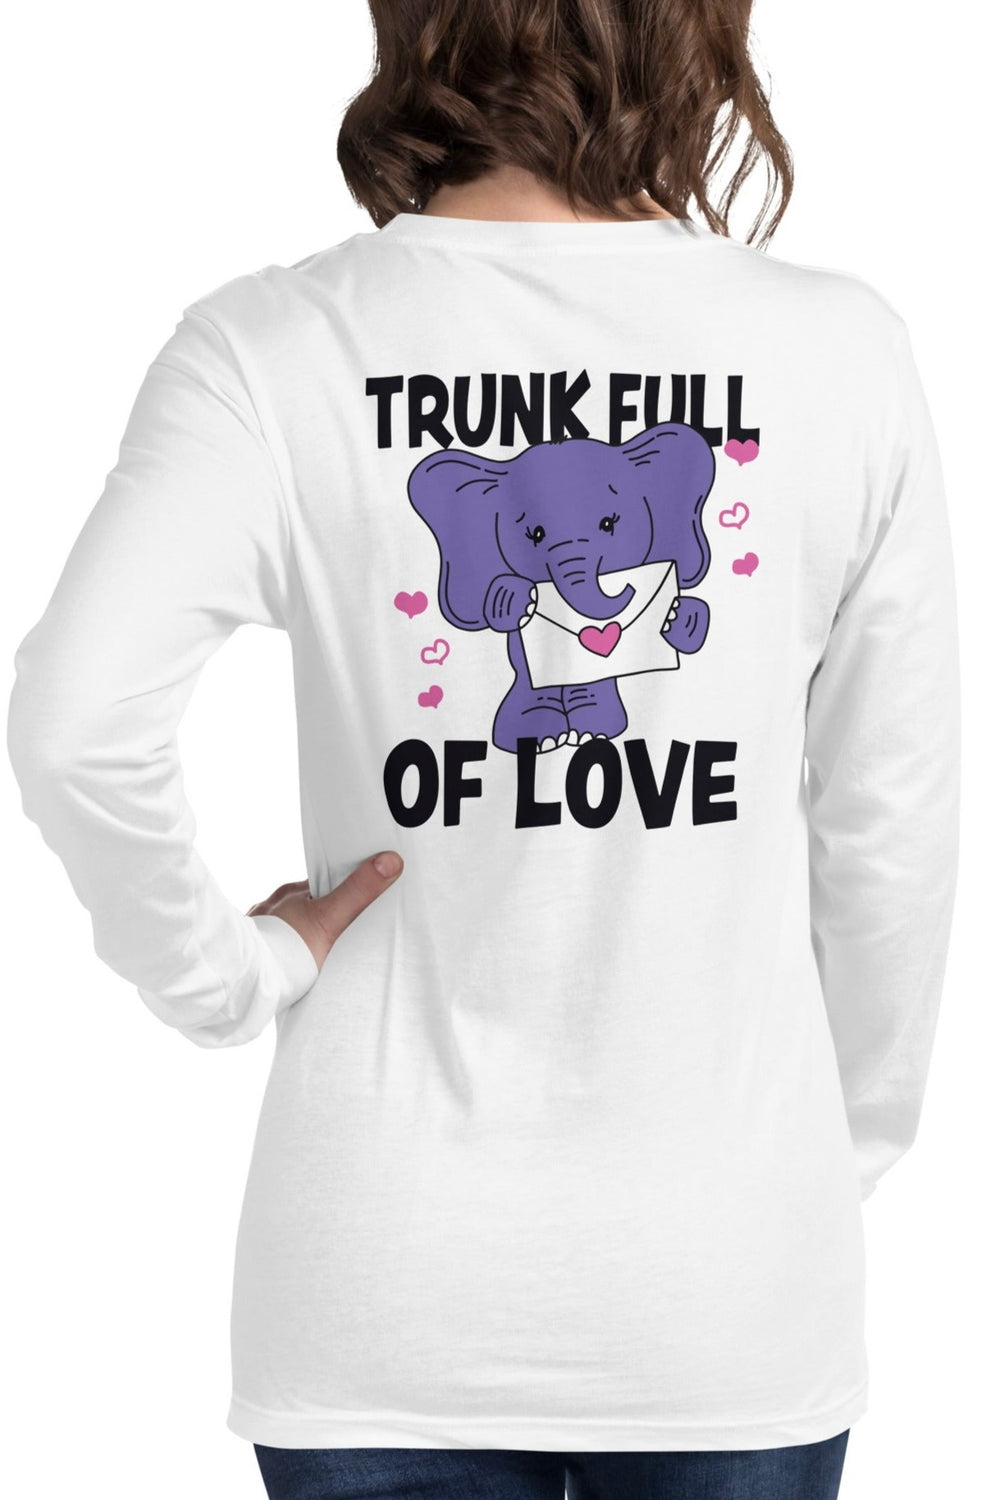 Trunk Full of Love Long Sleeve Unisex T-Shirt